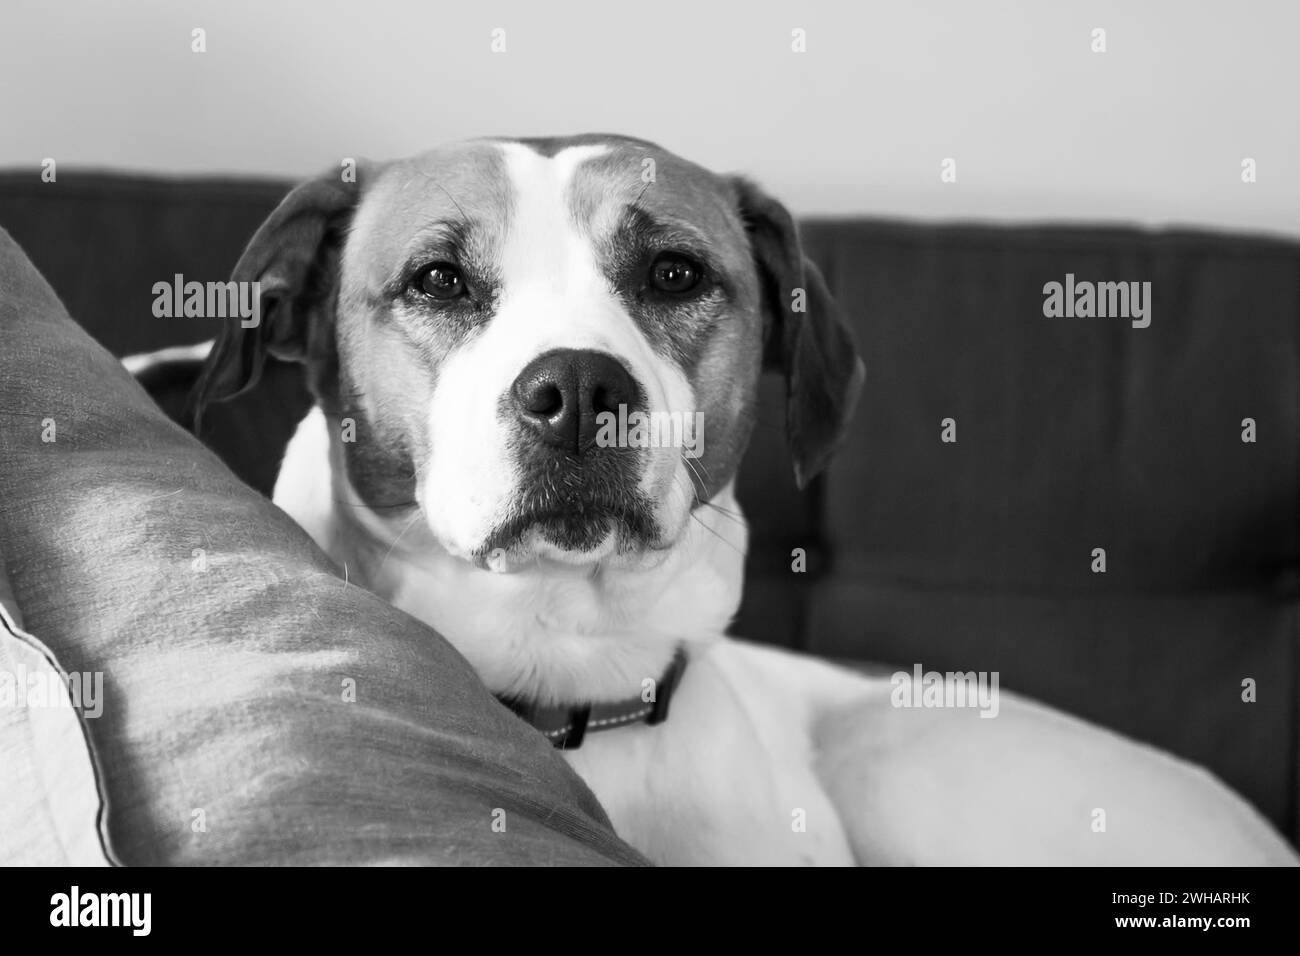 Portrait de beagle, regardant directement la caméra. Banque D'Images